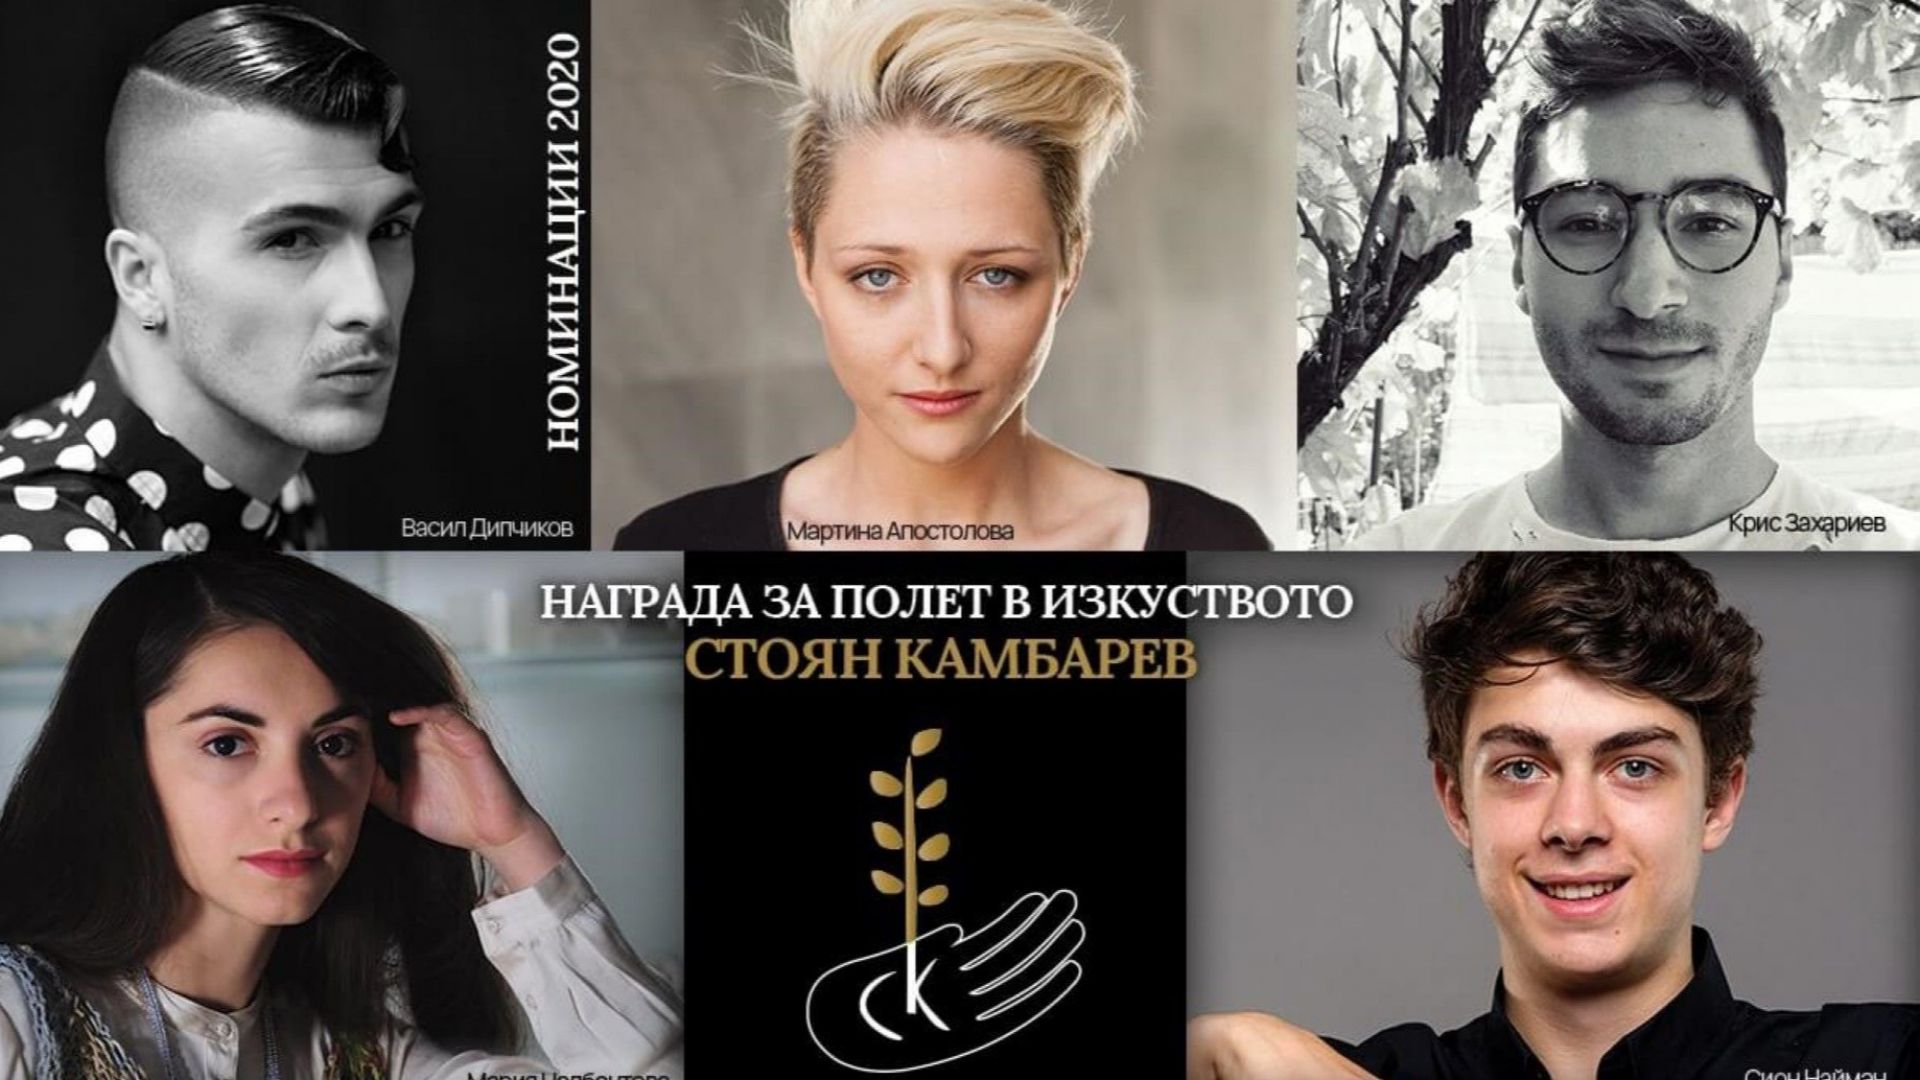 Пет изгряващи звезди са номинирани за Награда за полет в изкуството „Стоян Камбарев” 2020